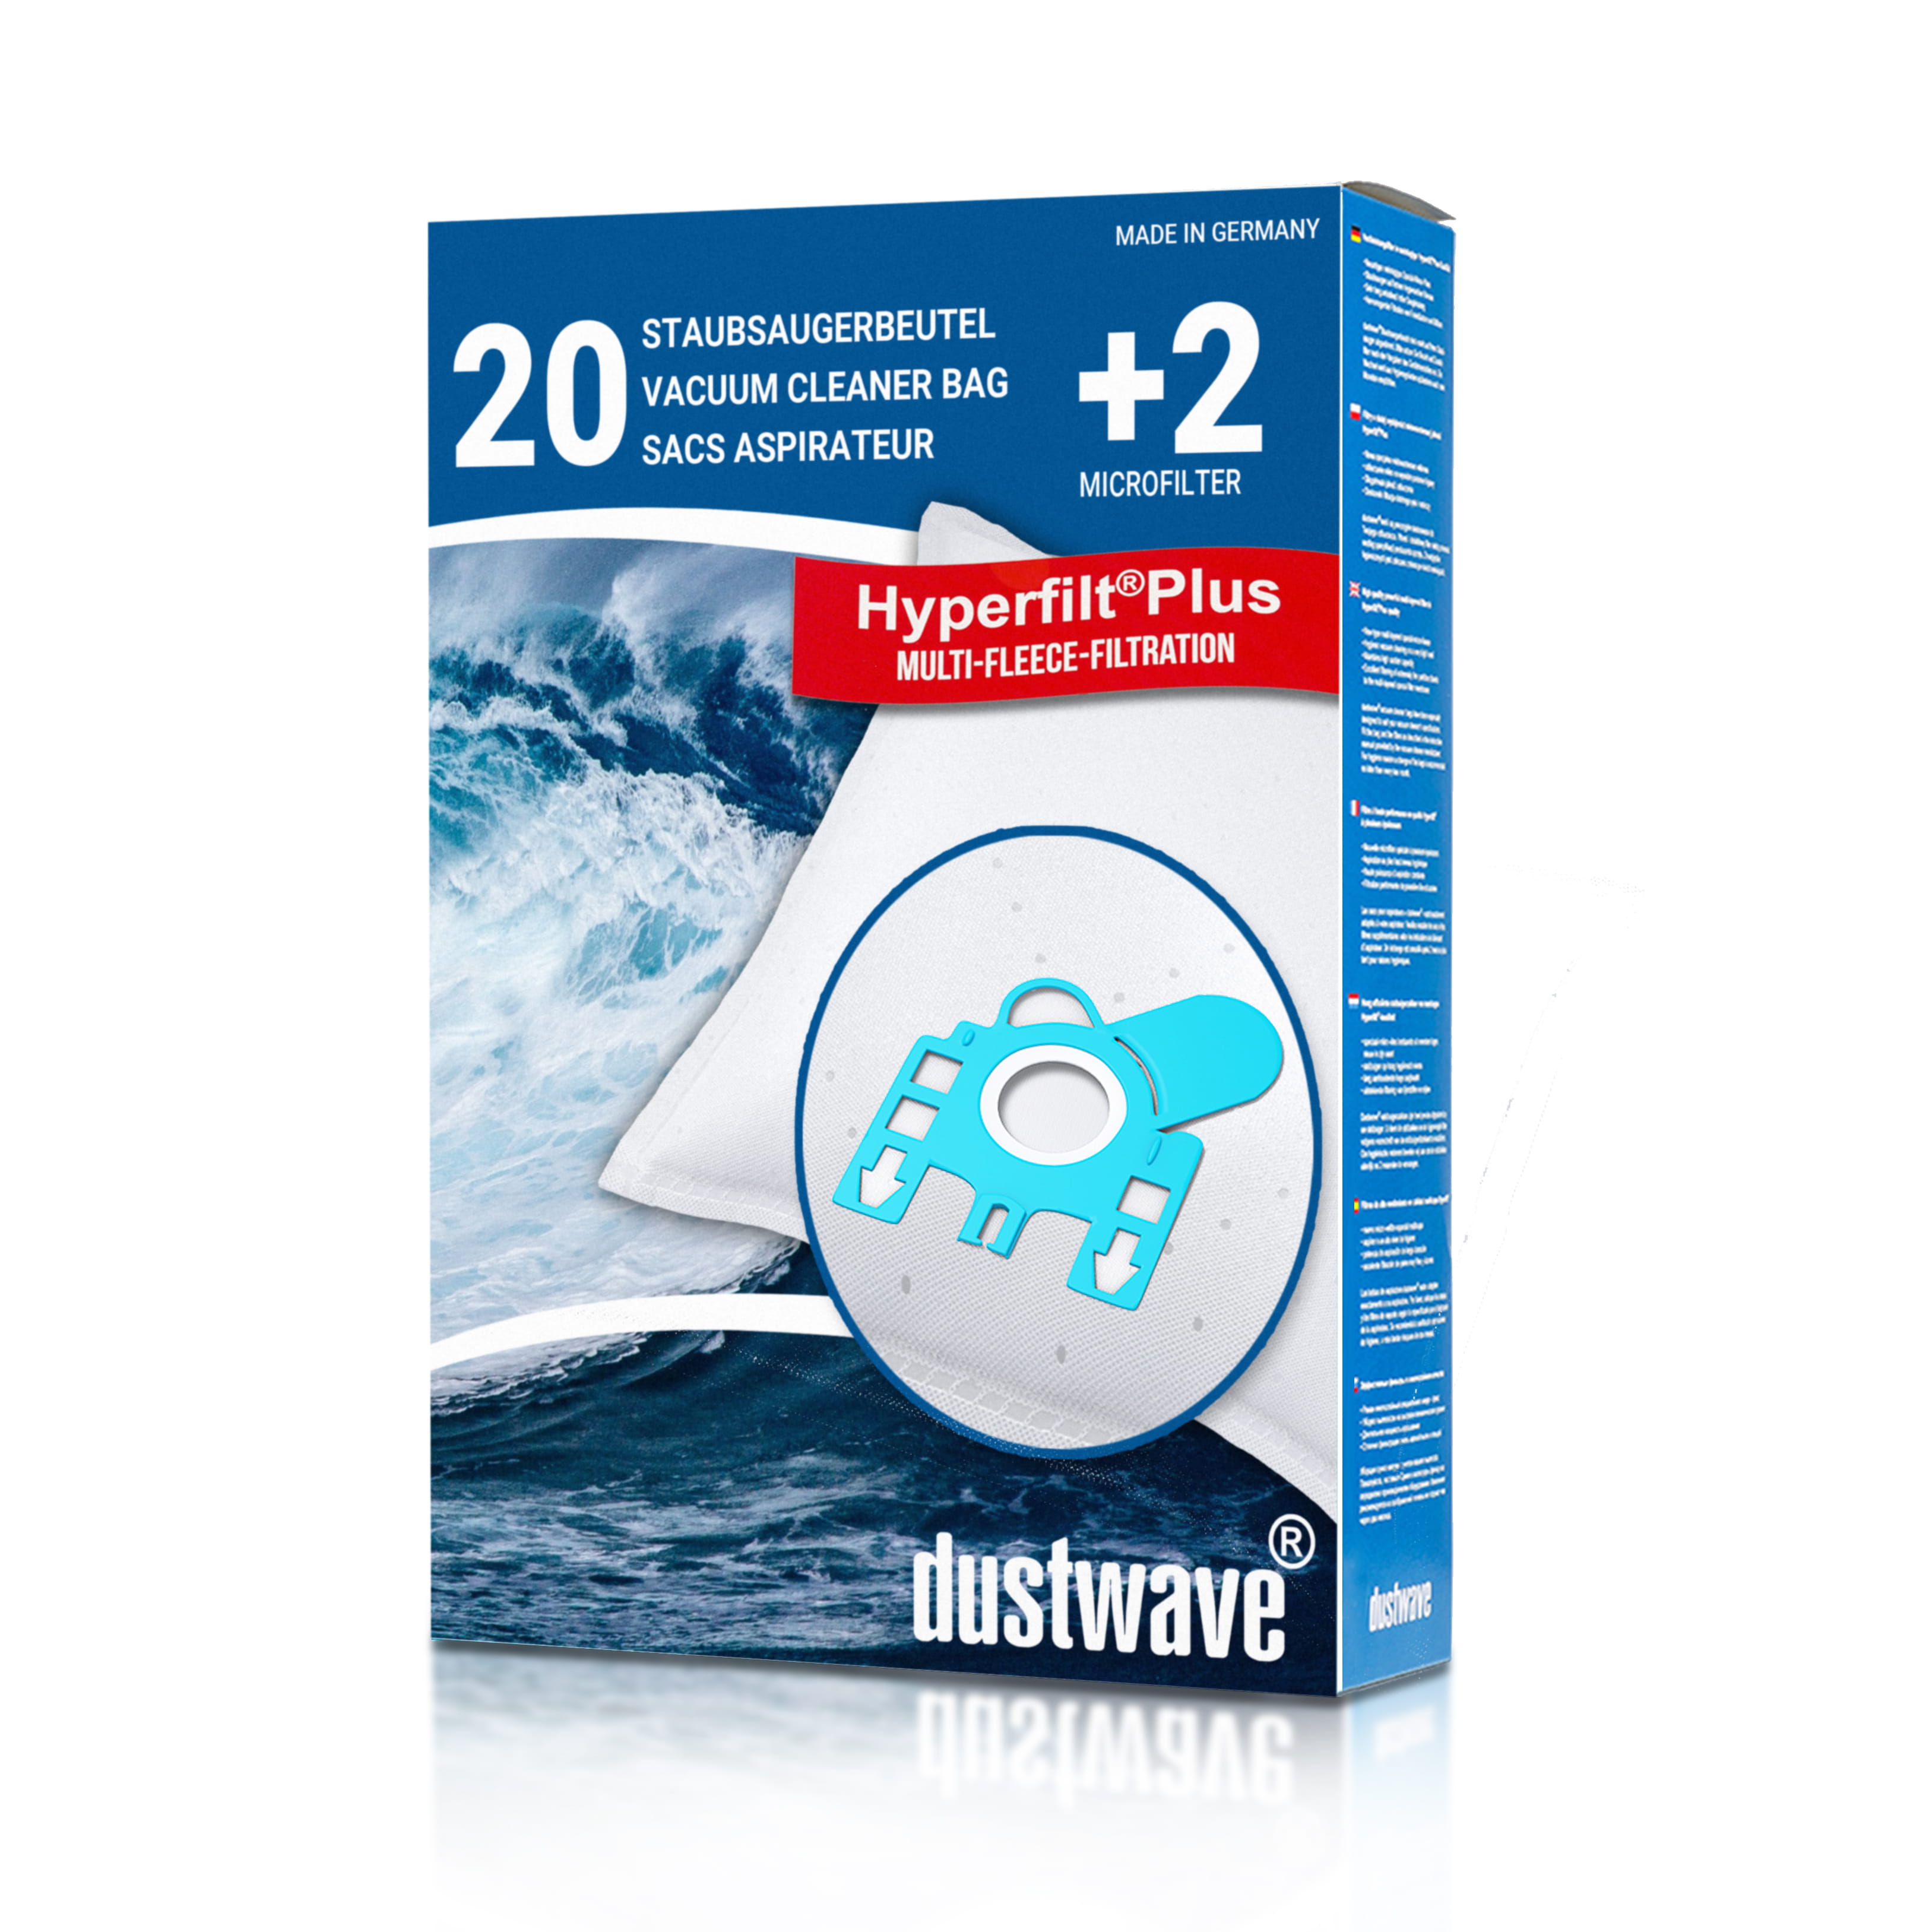 Dustwave® 20 Staubsaugerbeutel für Hoover TS2064 / TRTS2064 Sensory - hocheffizient, mehrlagiges Mikrovlies mit Hygieneverschluss - Made in Germany